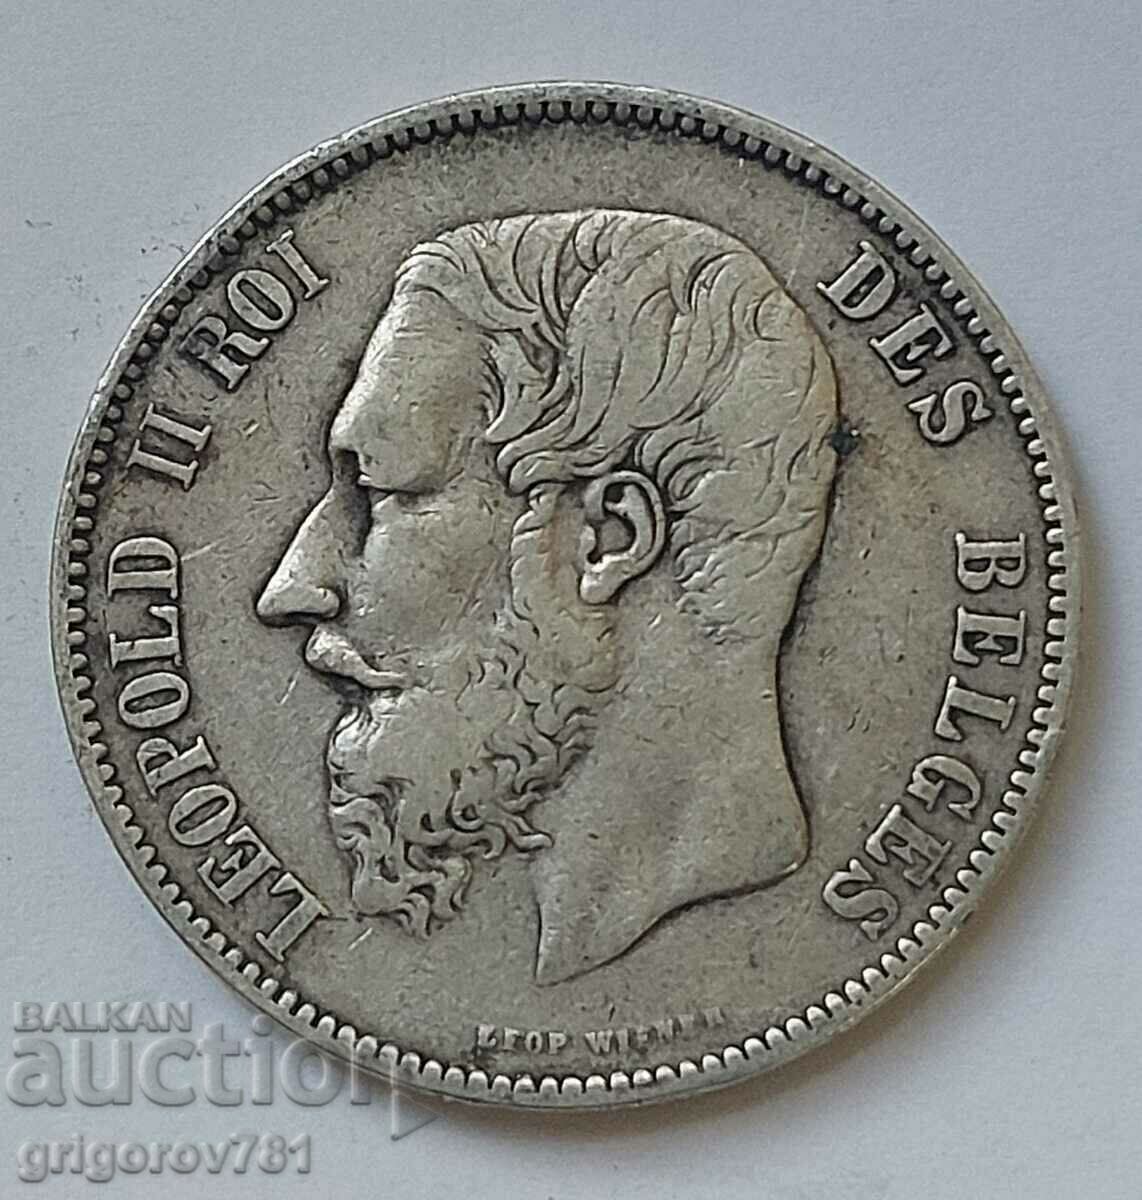 5 Francs Silver Belgium 1876 Silver Coin #185